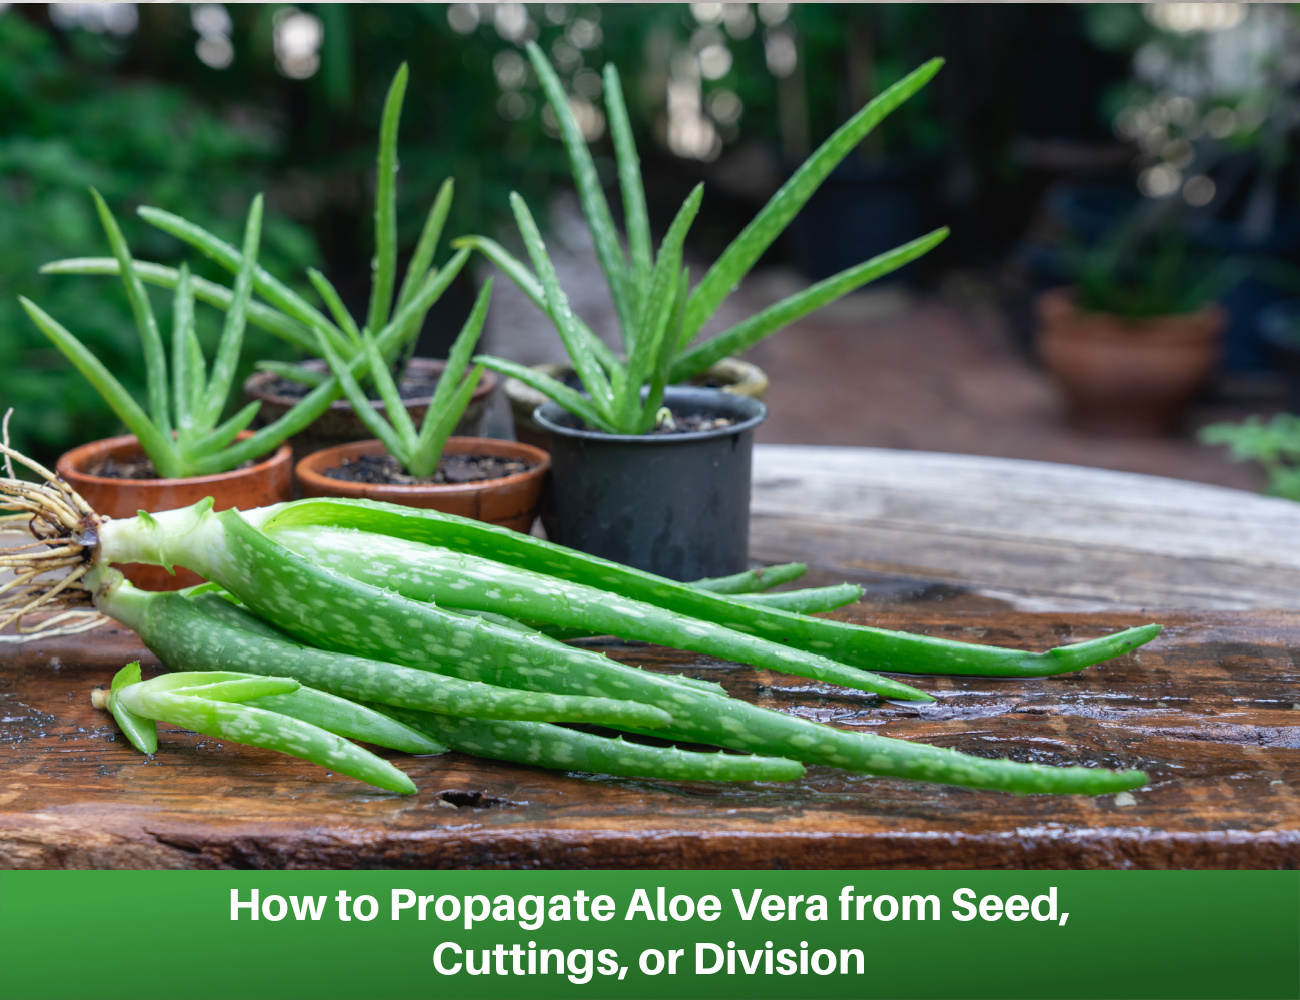 Aloe vera propagation